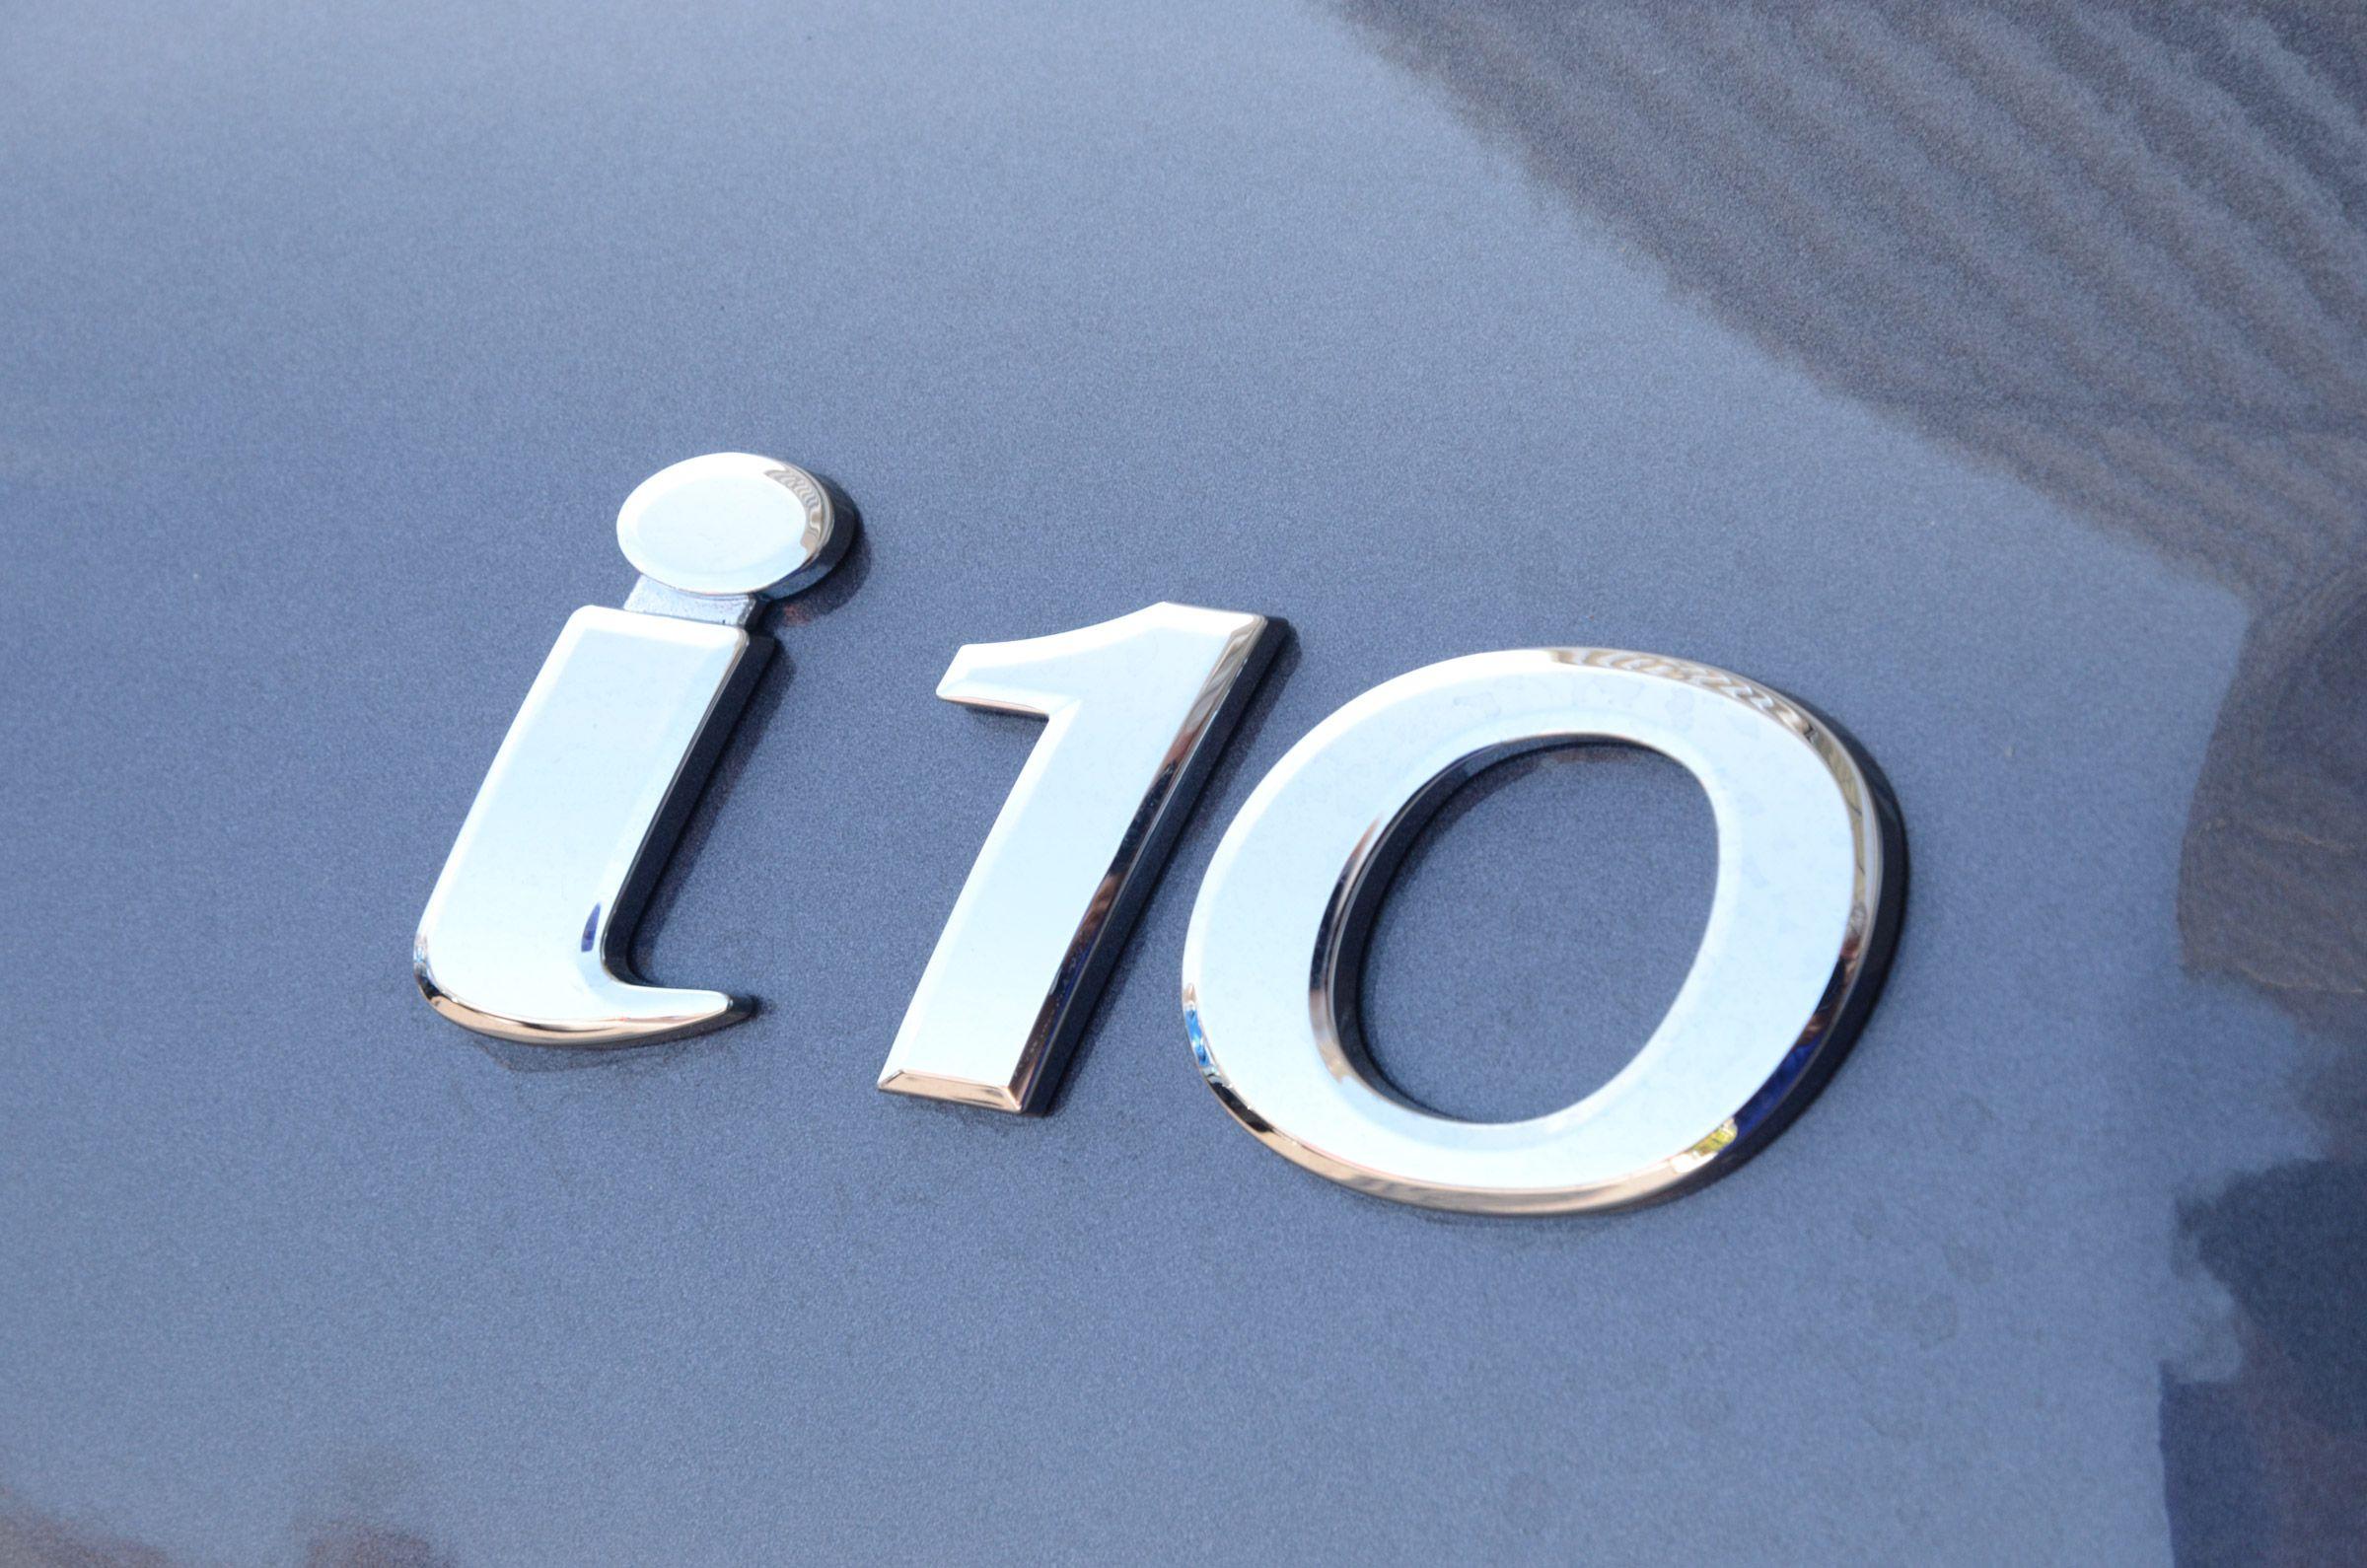 I-10 Logo - Hyundai i10 SE long termer pictures | Auto Express